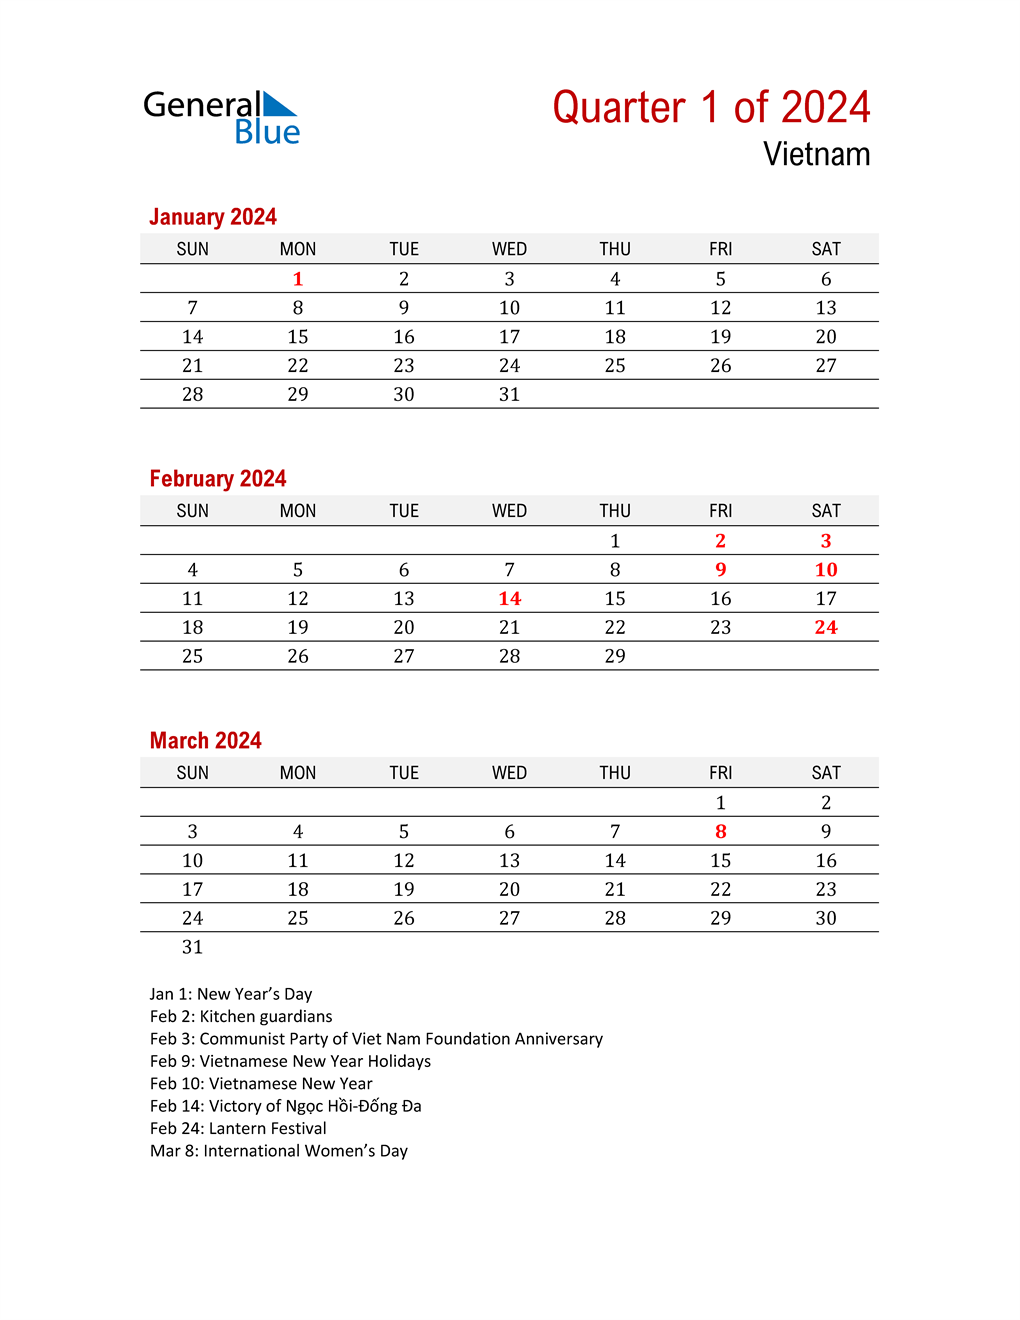 Q1 2024 Quarterly Calendar with Vietnam Holidays